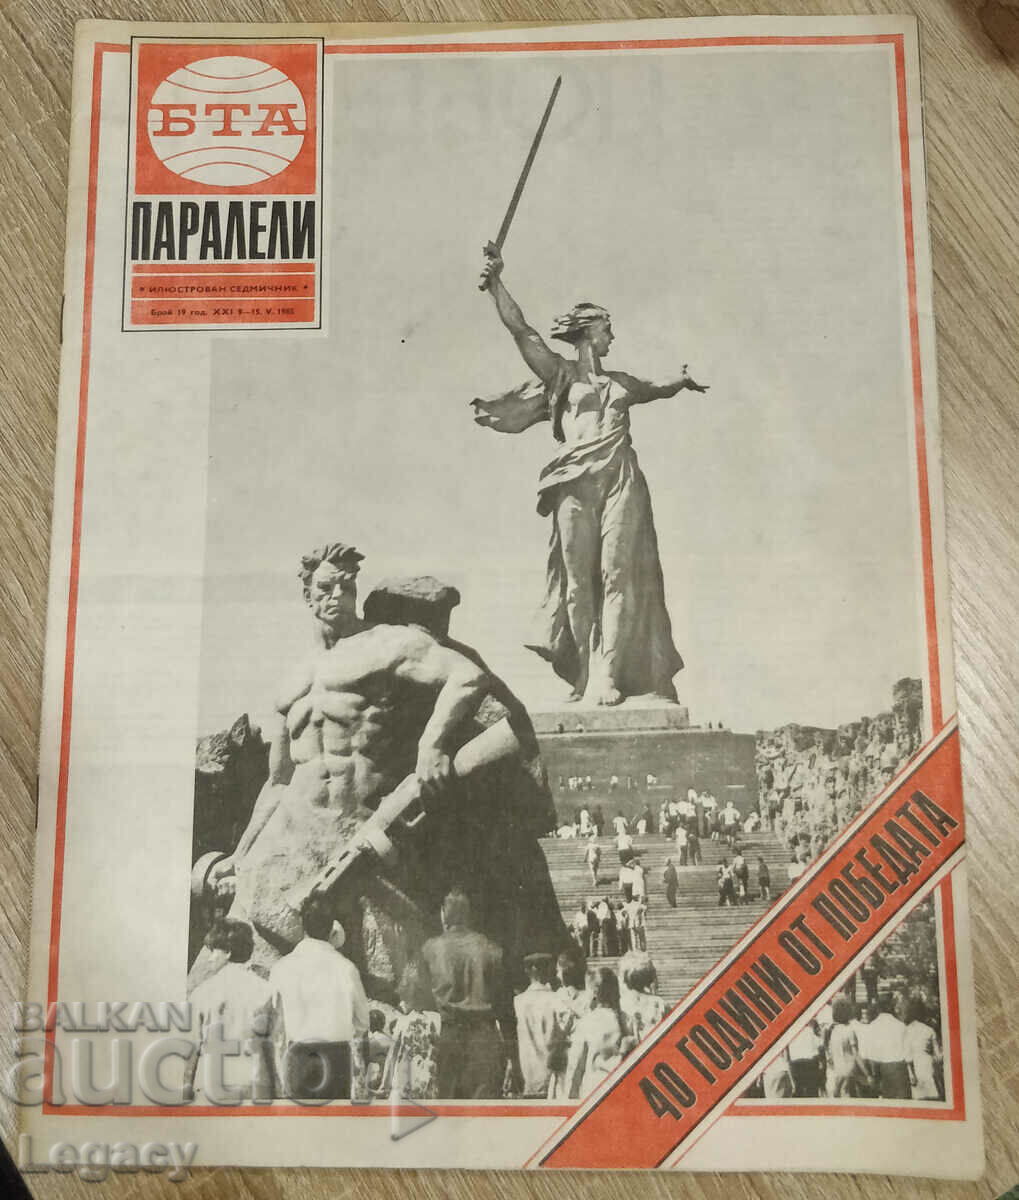 1985 Magazine BTA Parallels - 40 de ani de la victorie, numărul 19